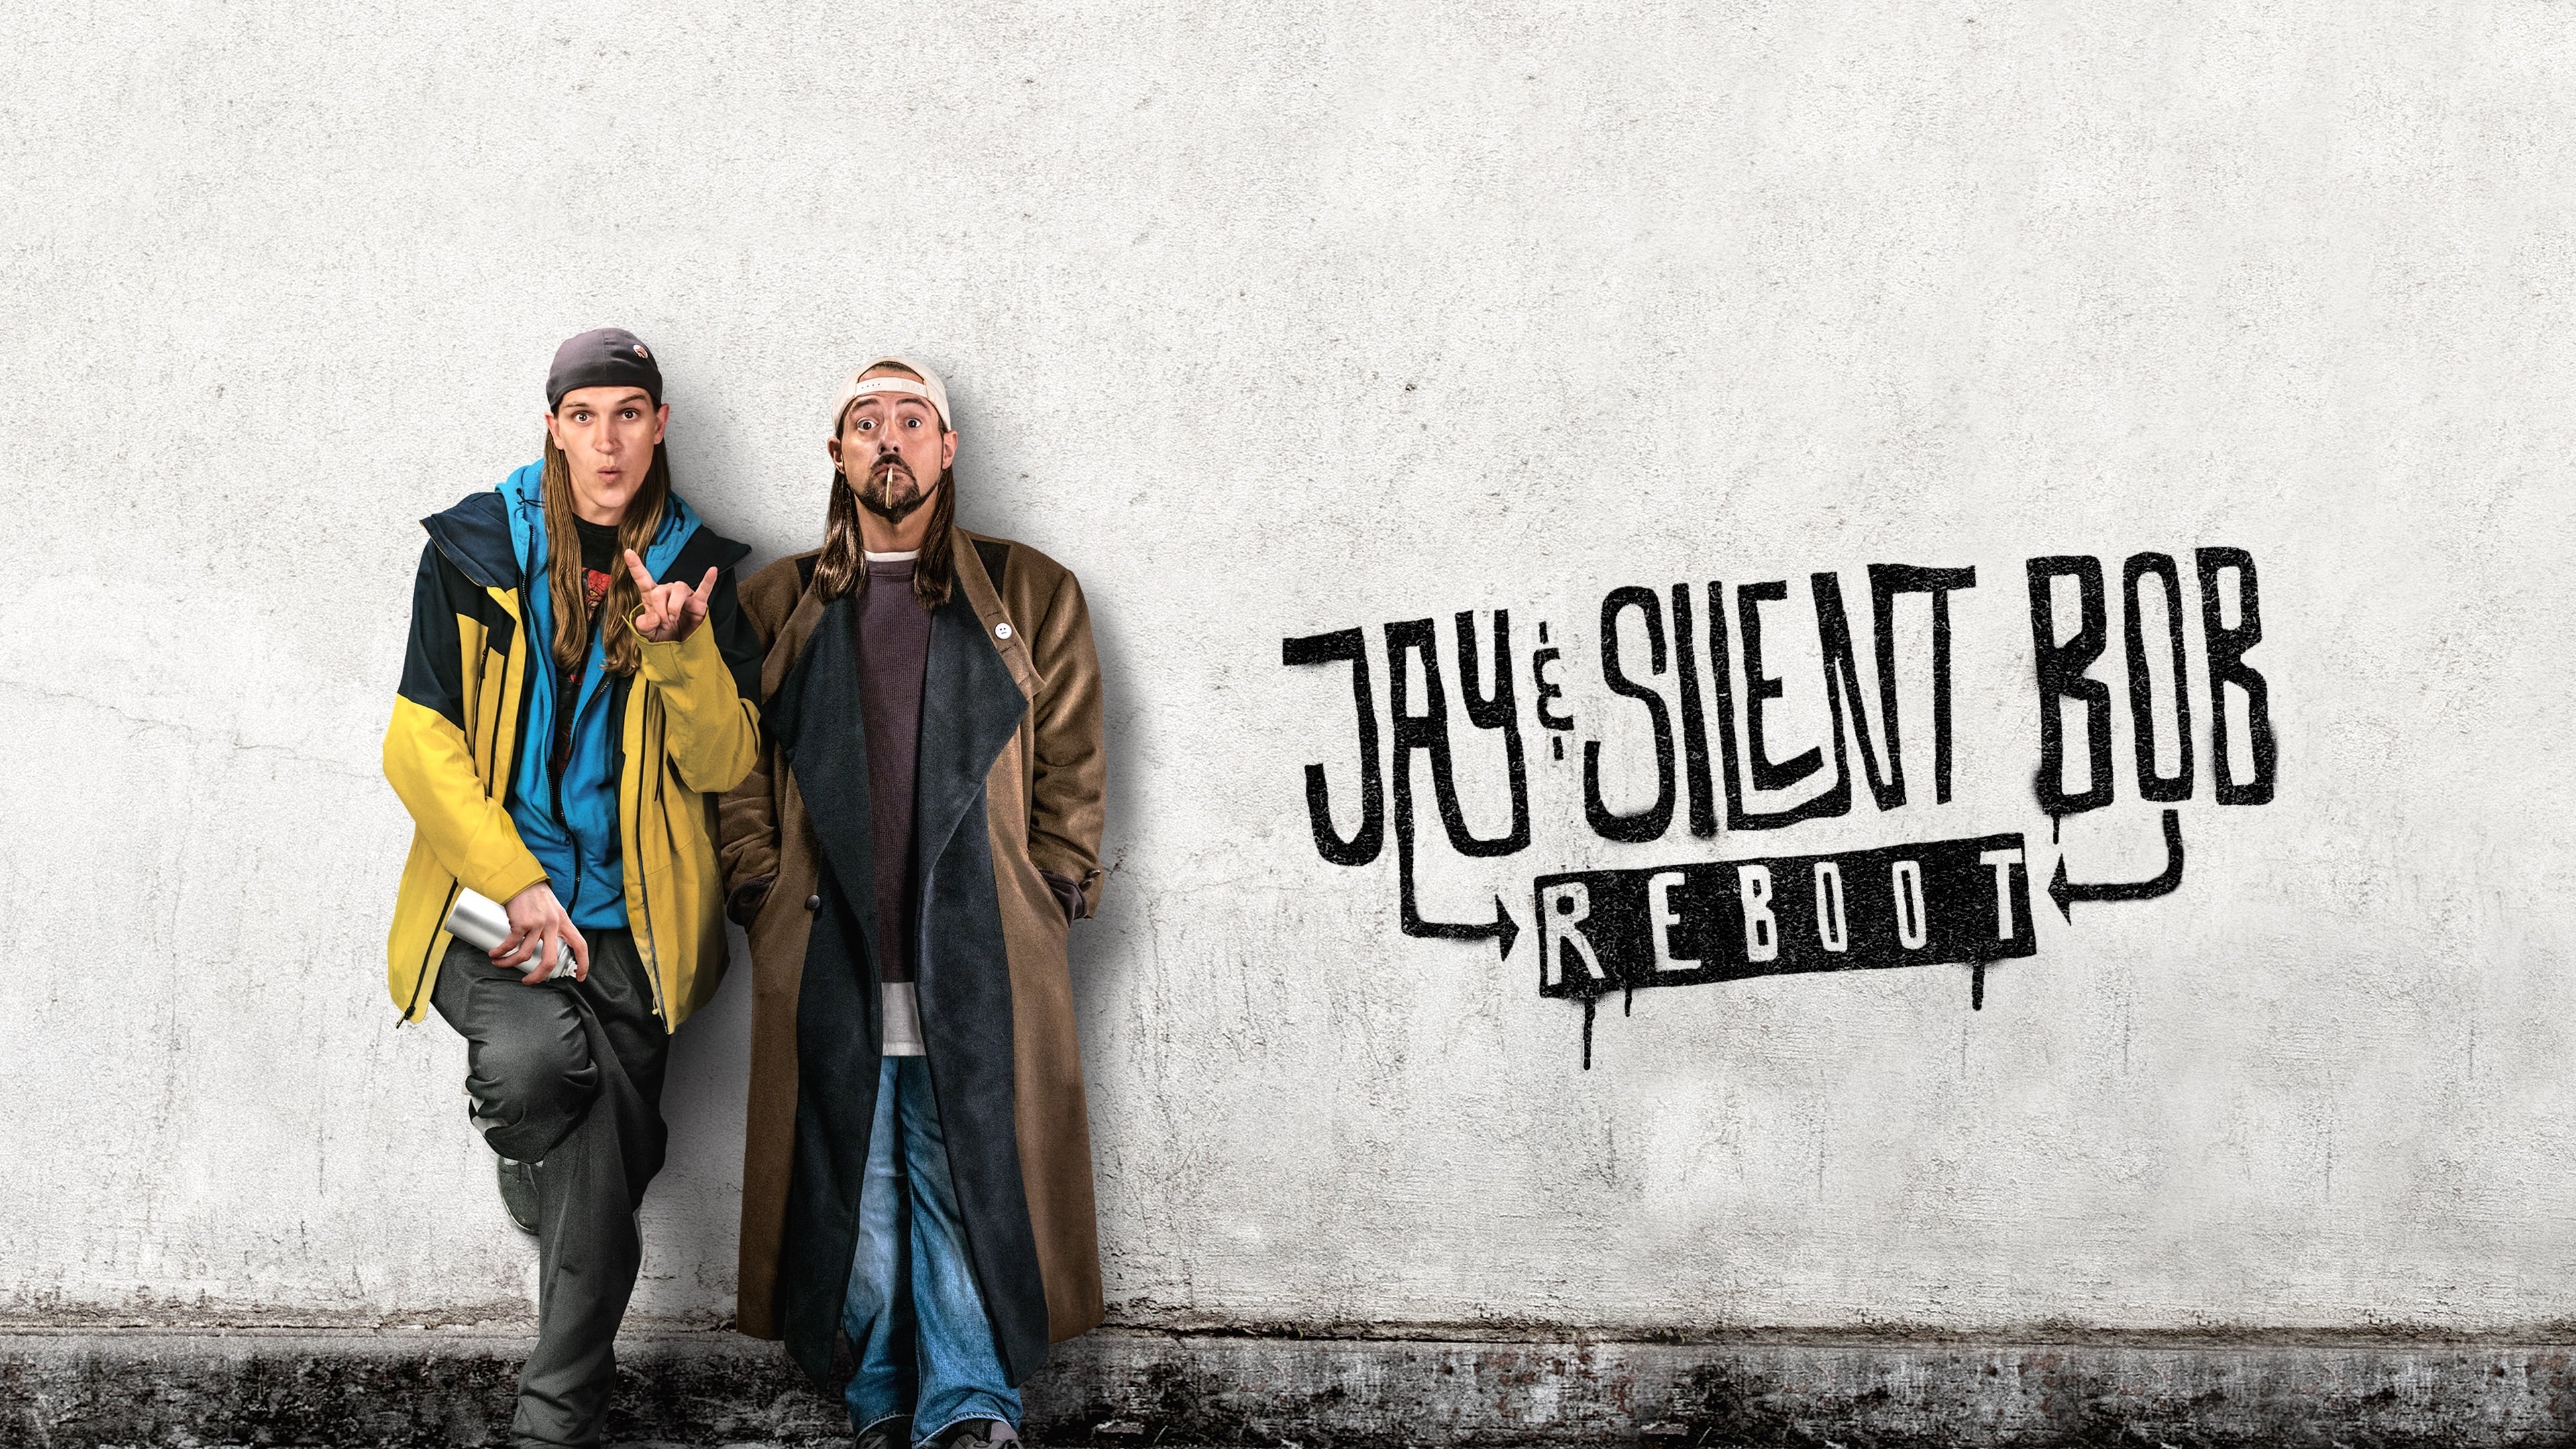 Jay y Bob el silencioso: El reboot